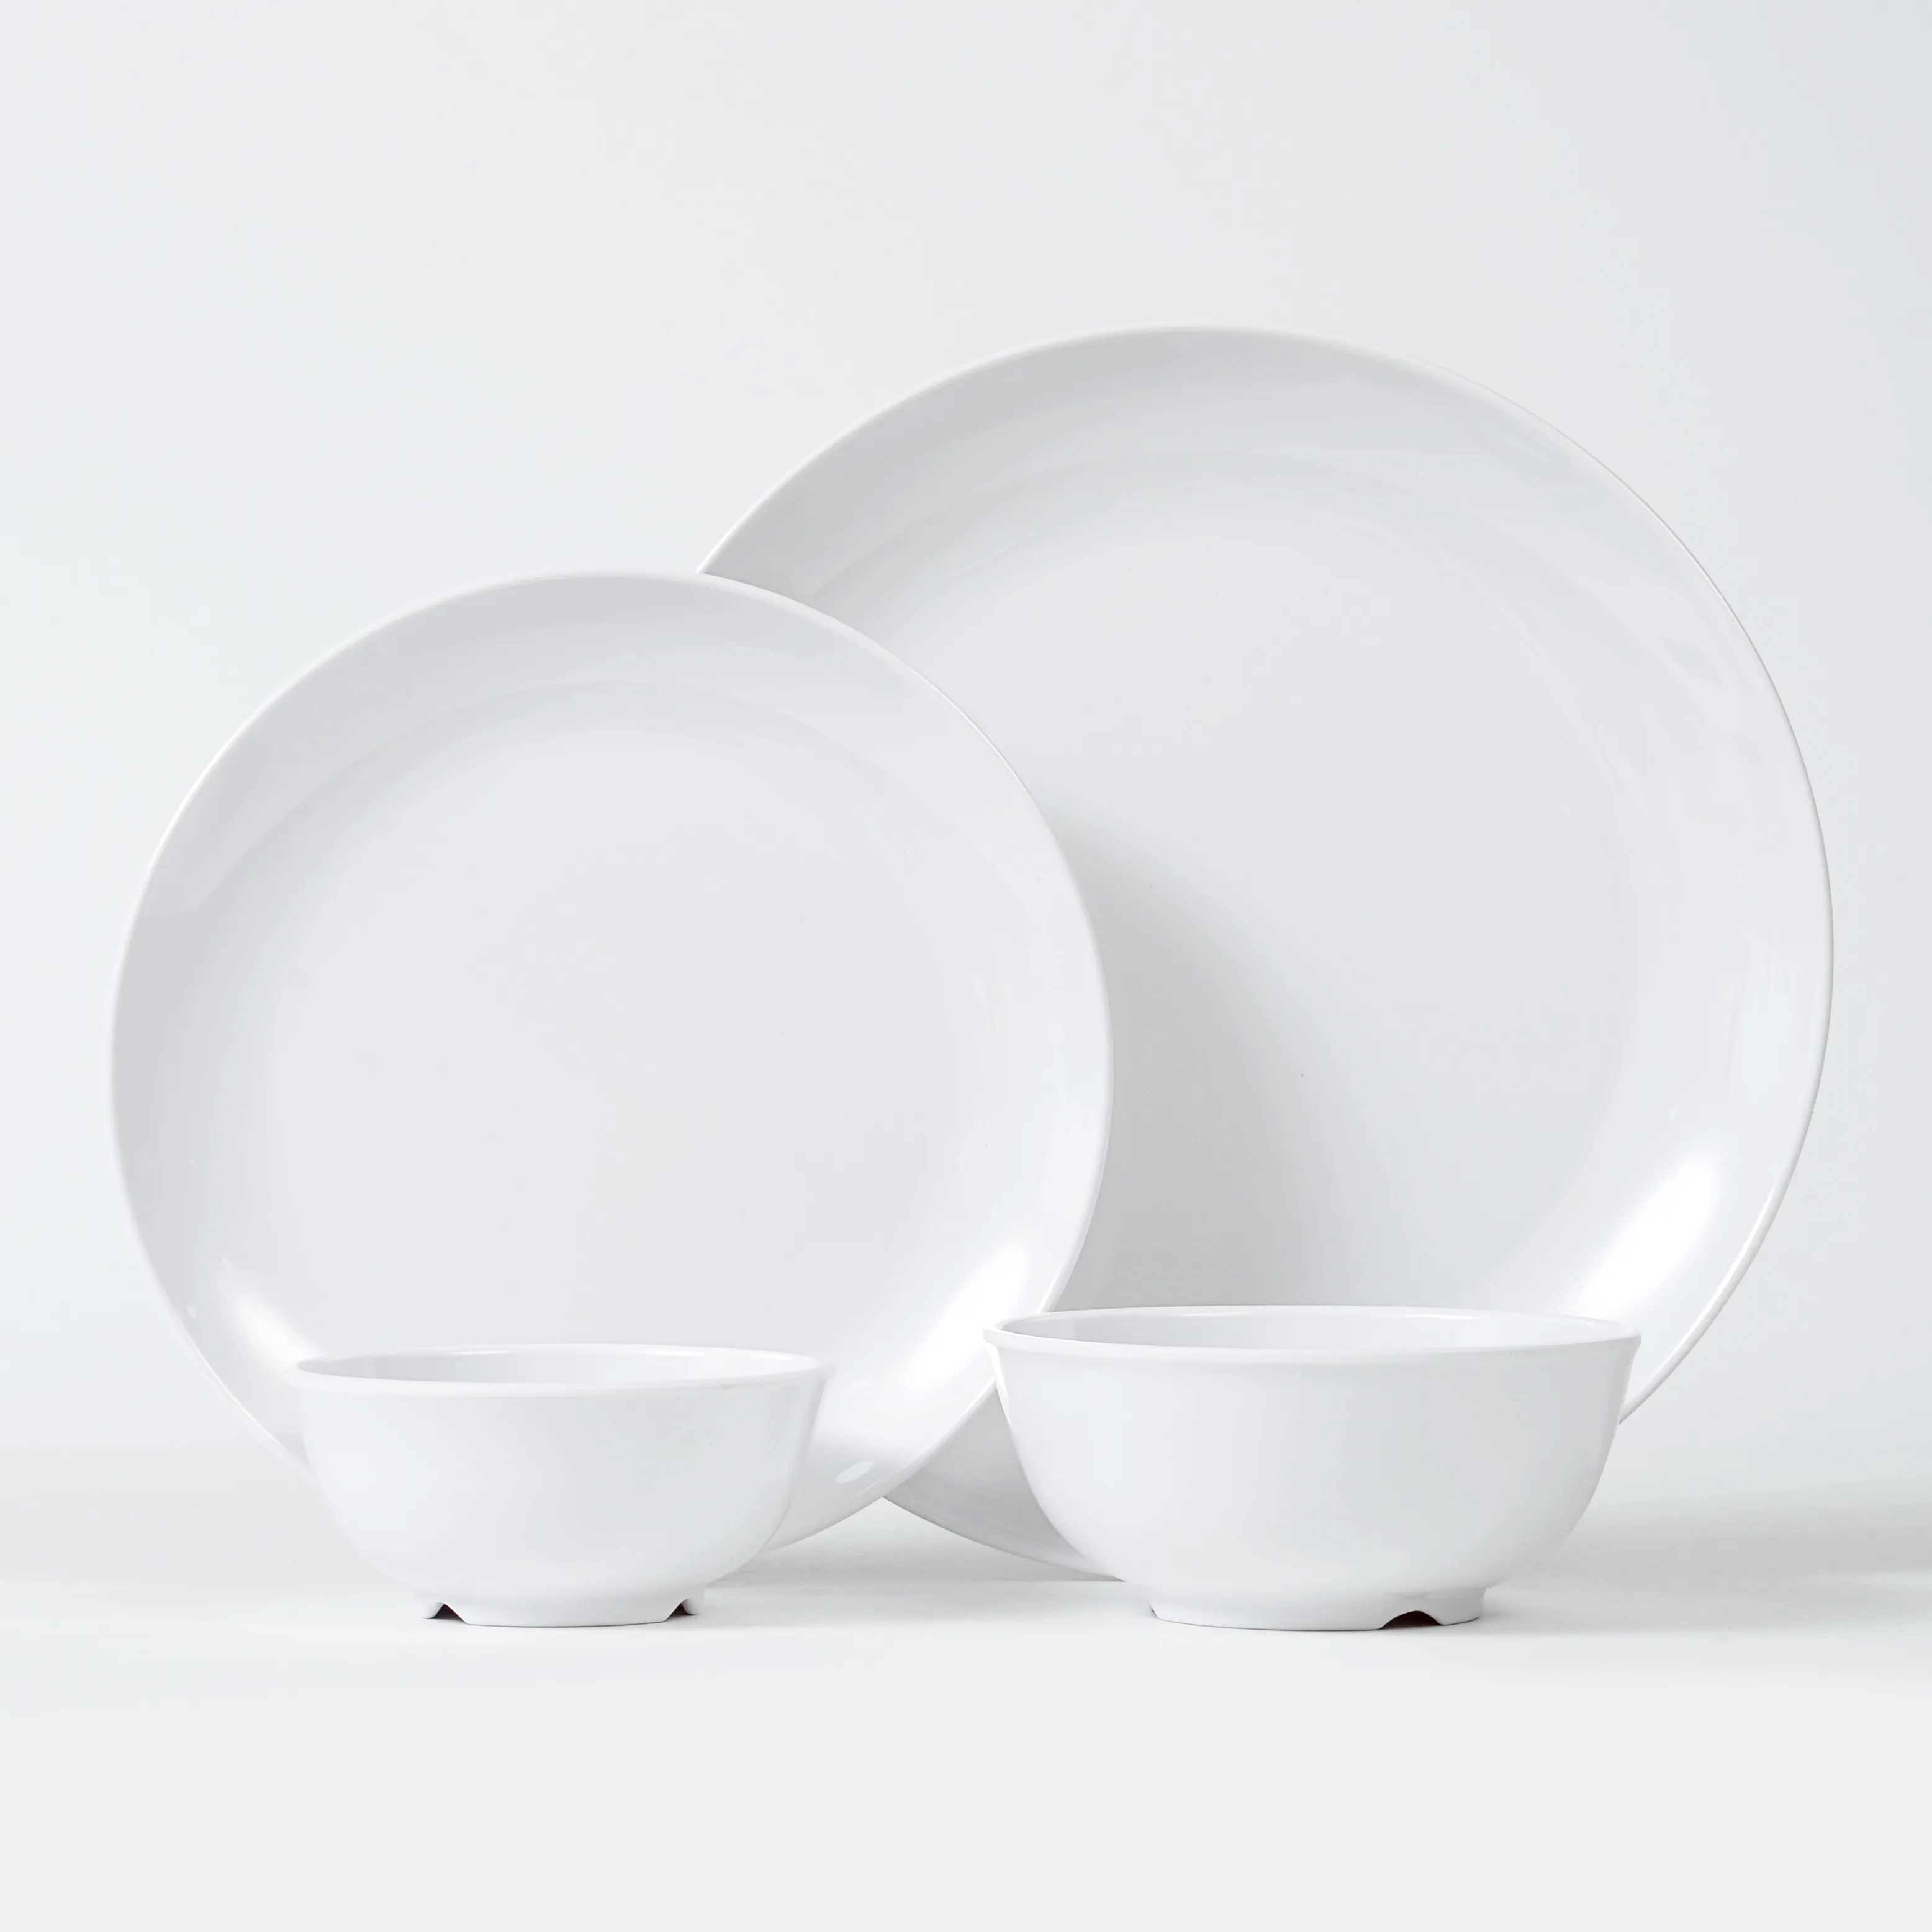 Assiette et bol ronds de couleur blanche classique ensembles 16 pièces ensemble de vaisselle en mélamine incassable au lave-vaisselle sans BPA